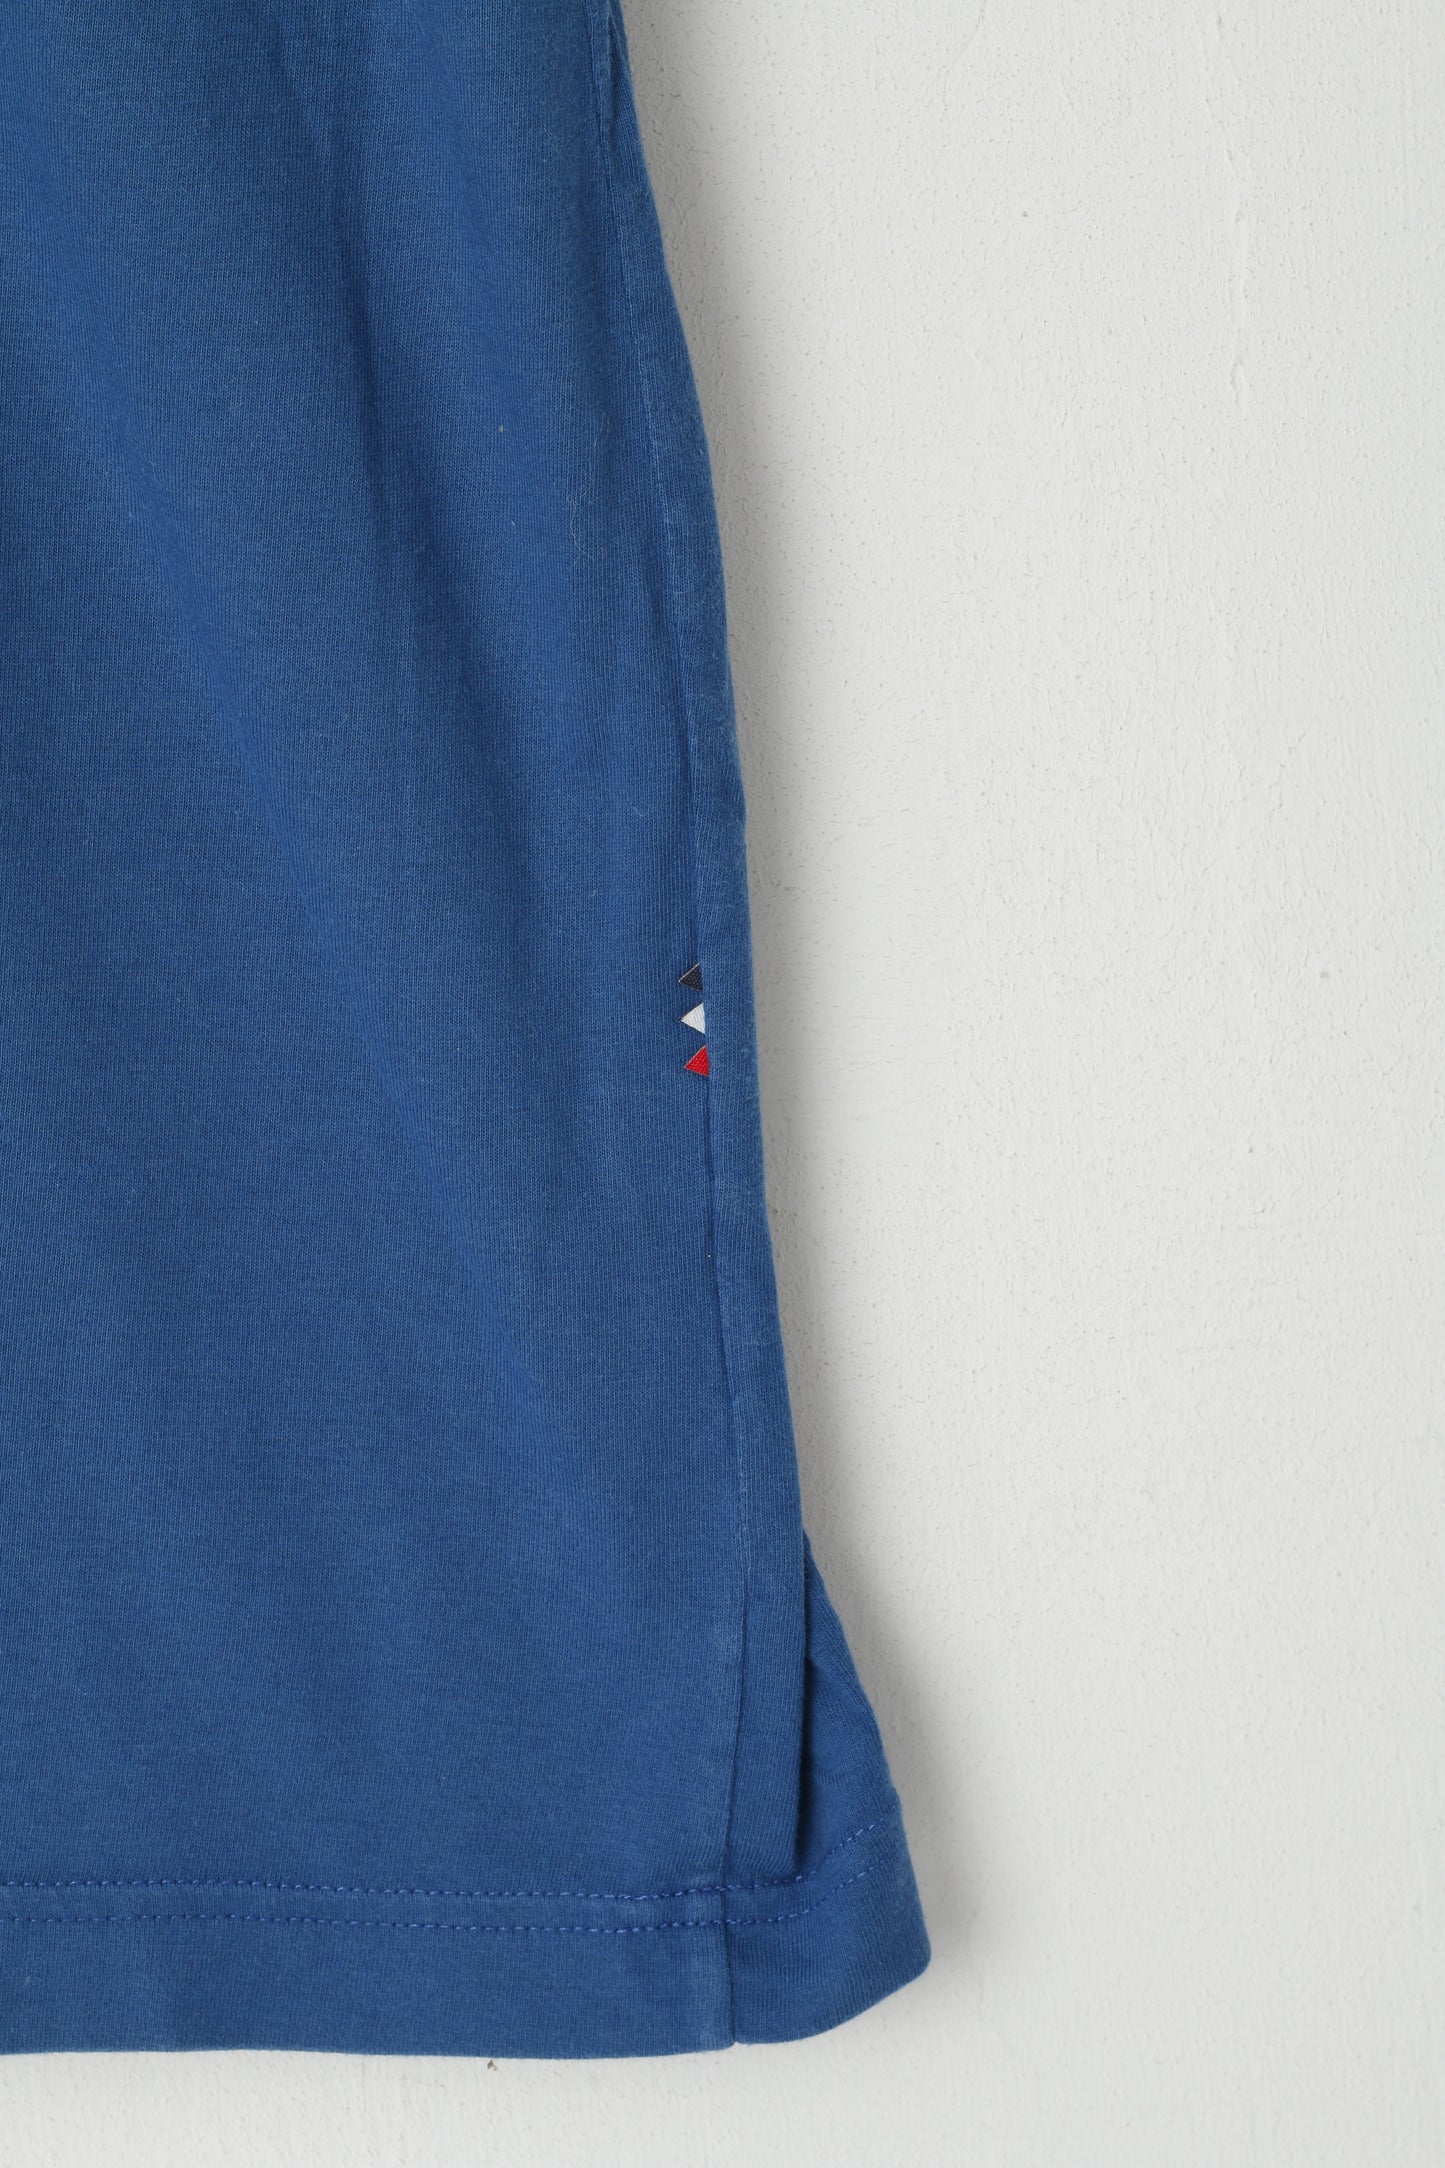 Camicia Lacoste Live da uomo 4 S. Top classico con collo rotondo e tasca in cotone blu